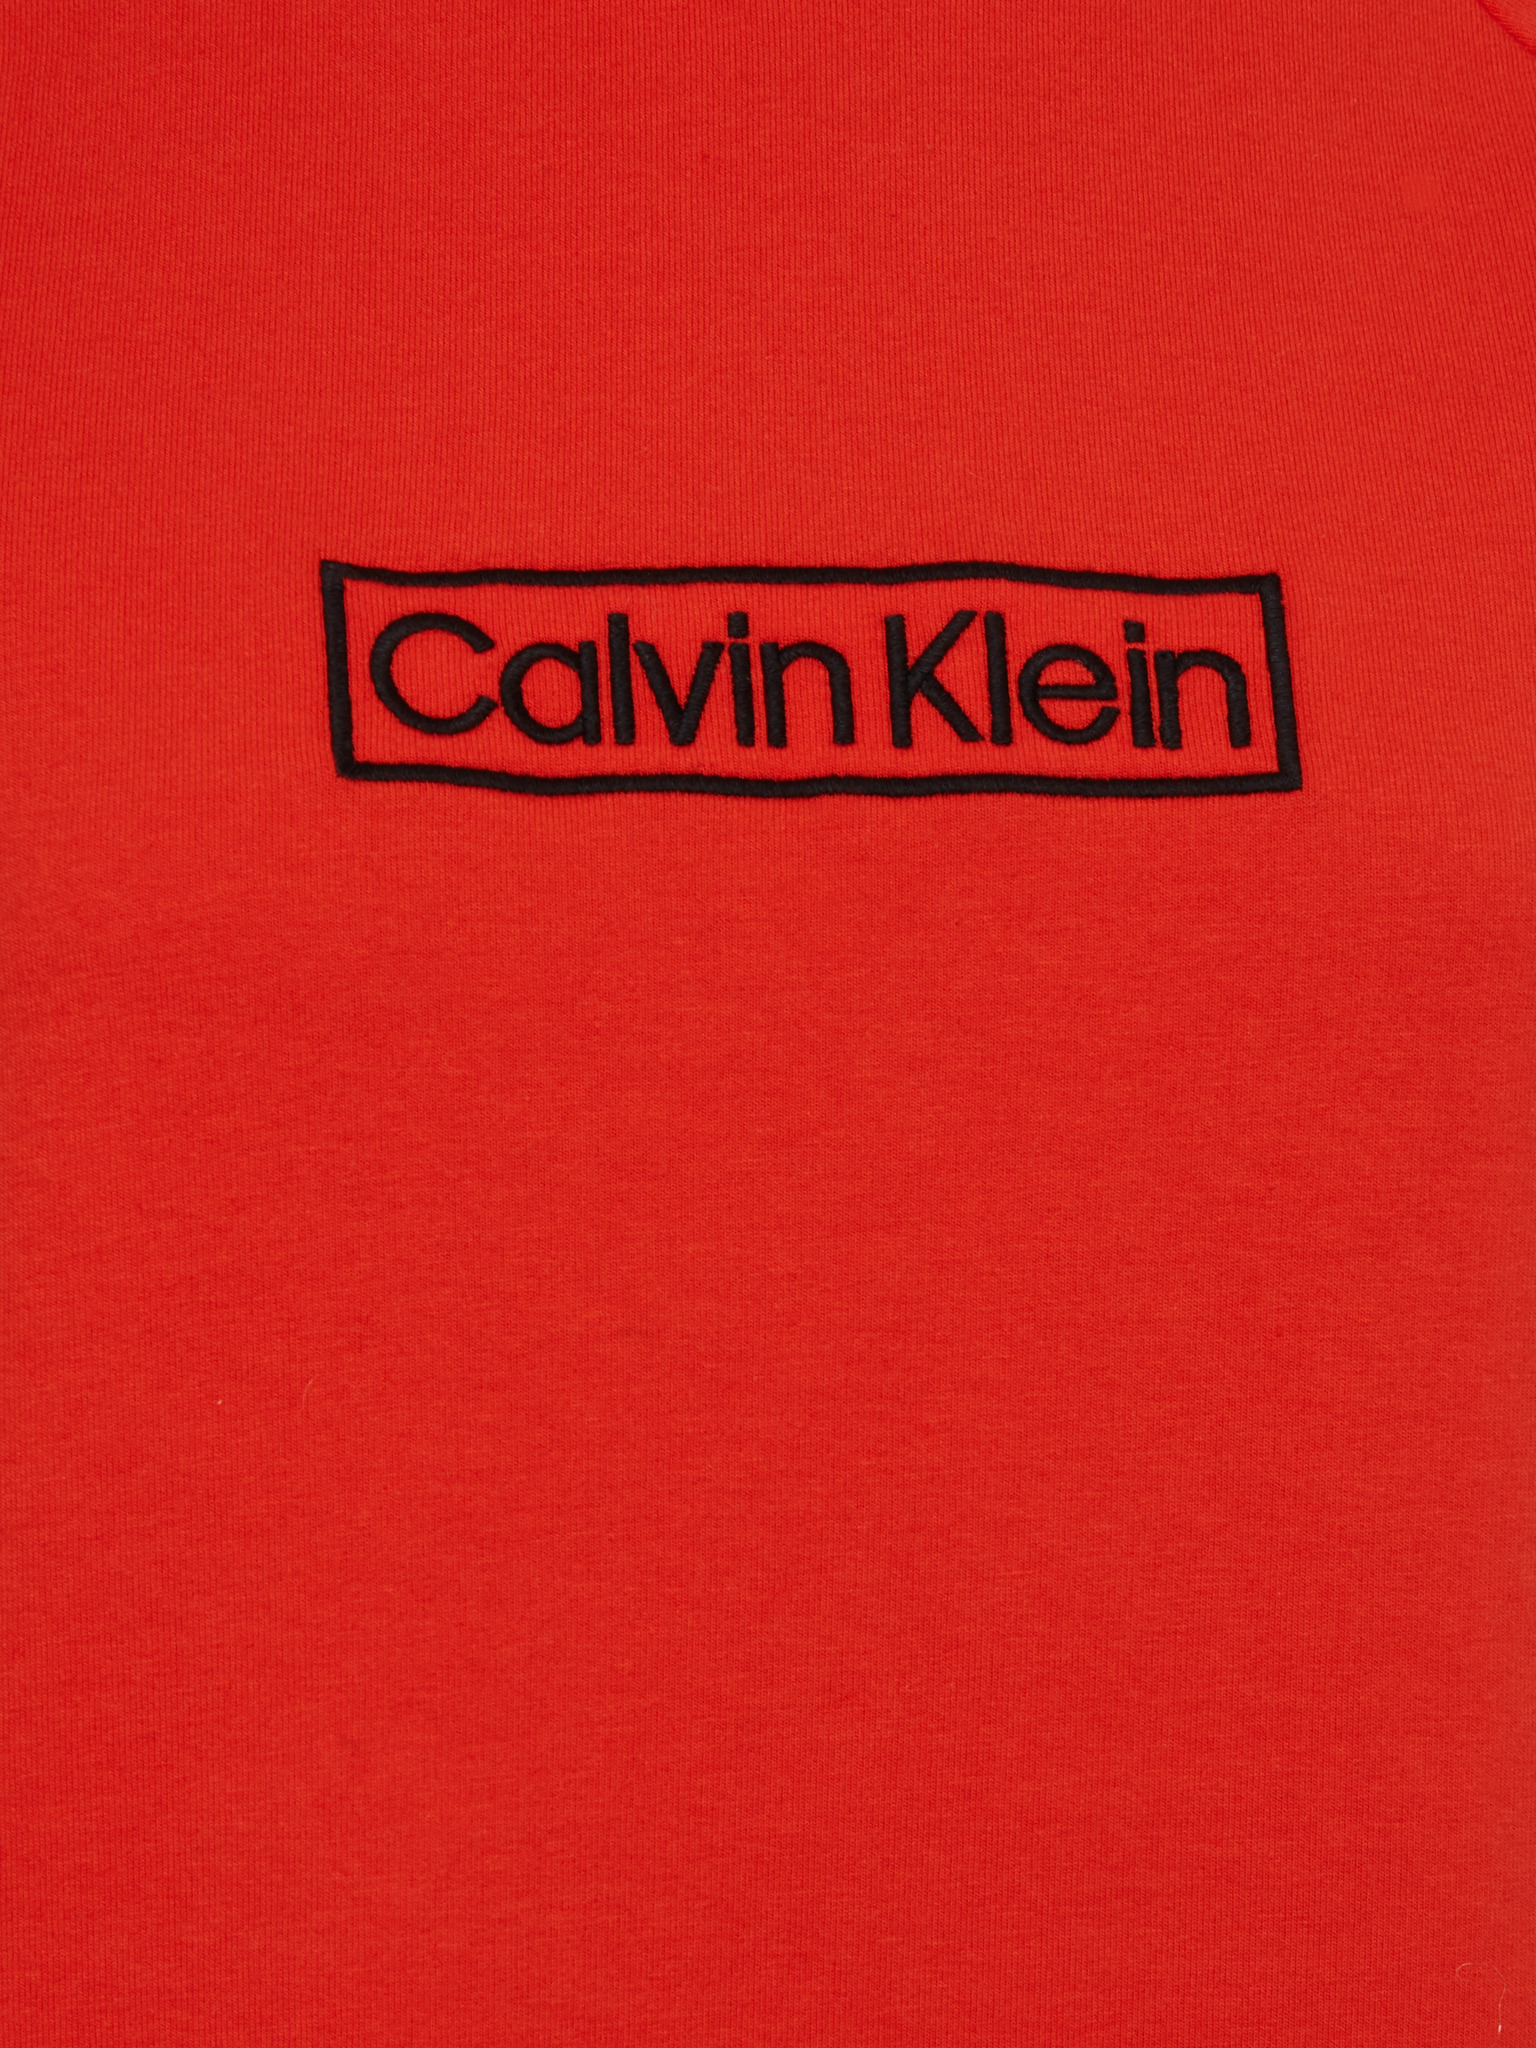 Calvin Klein Underwear - Nightgown